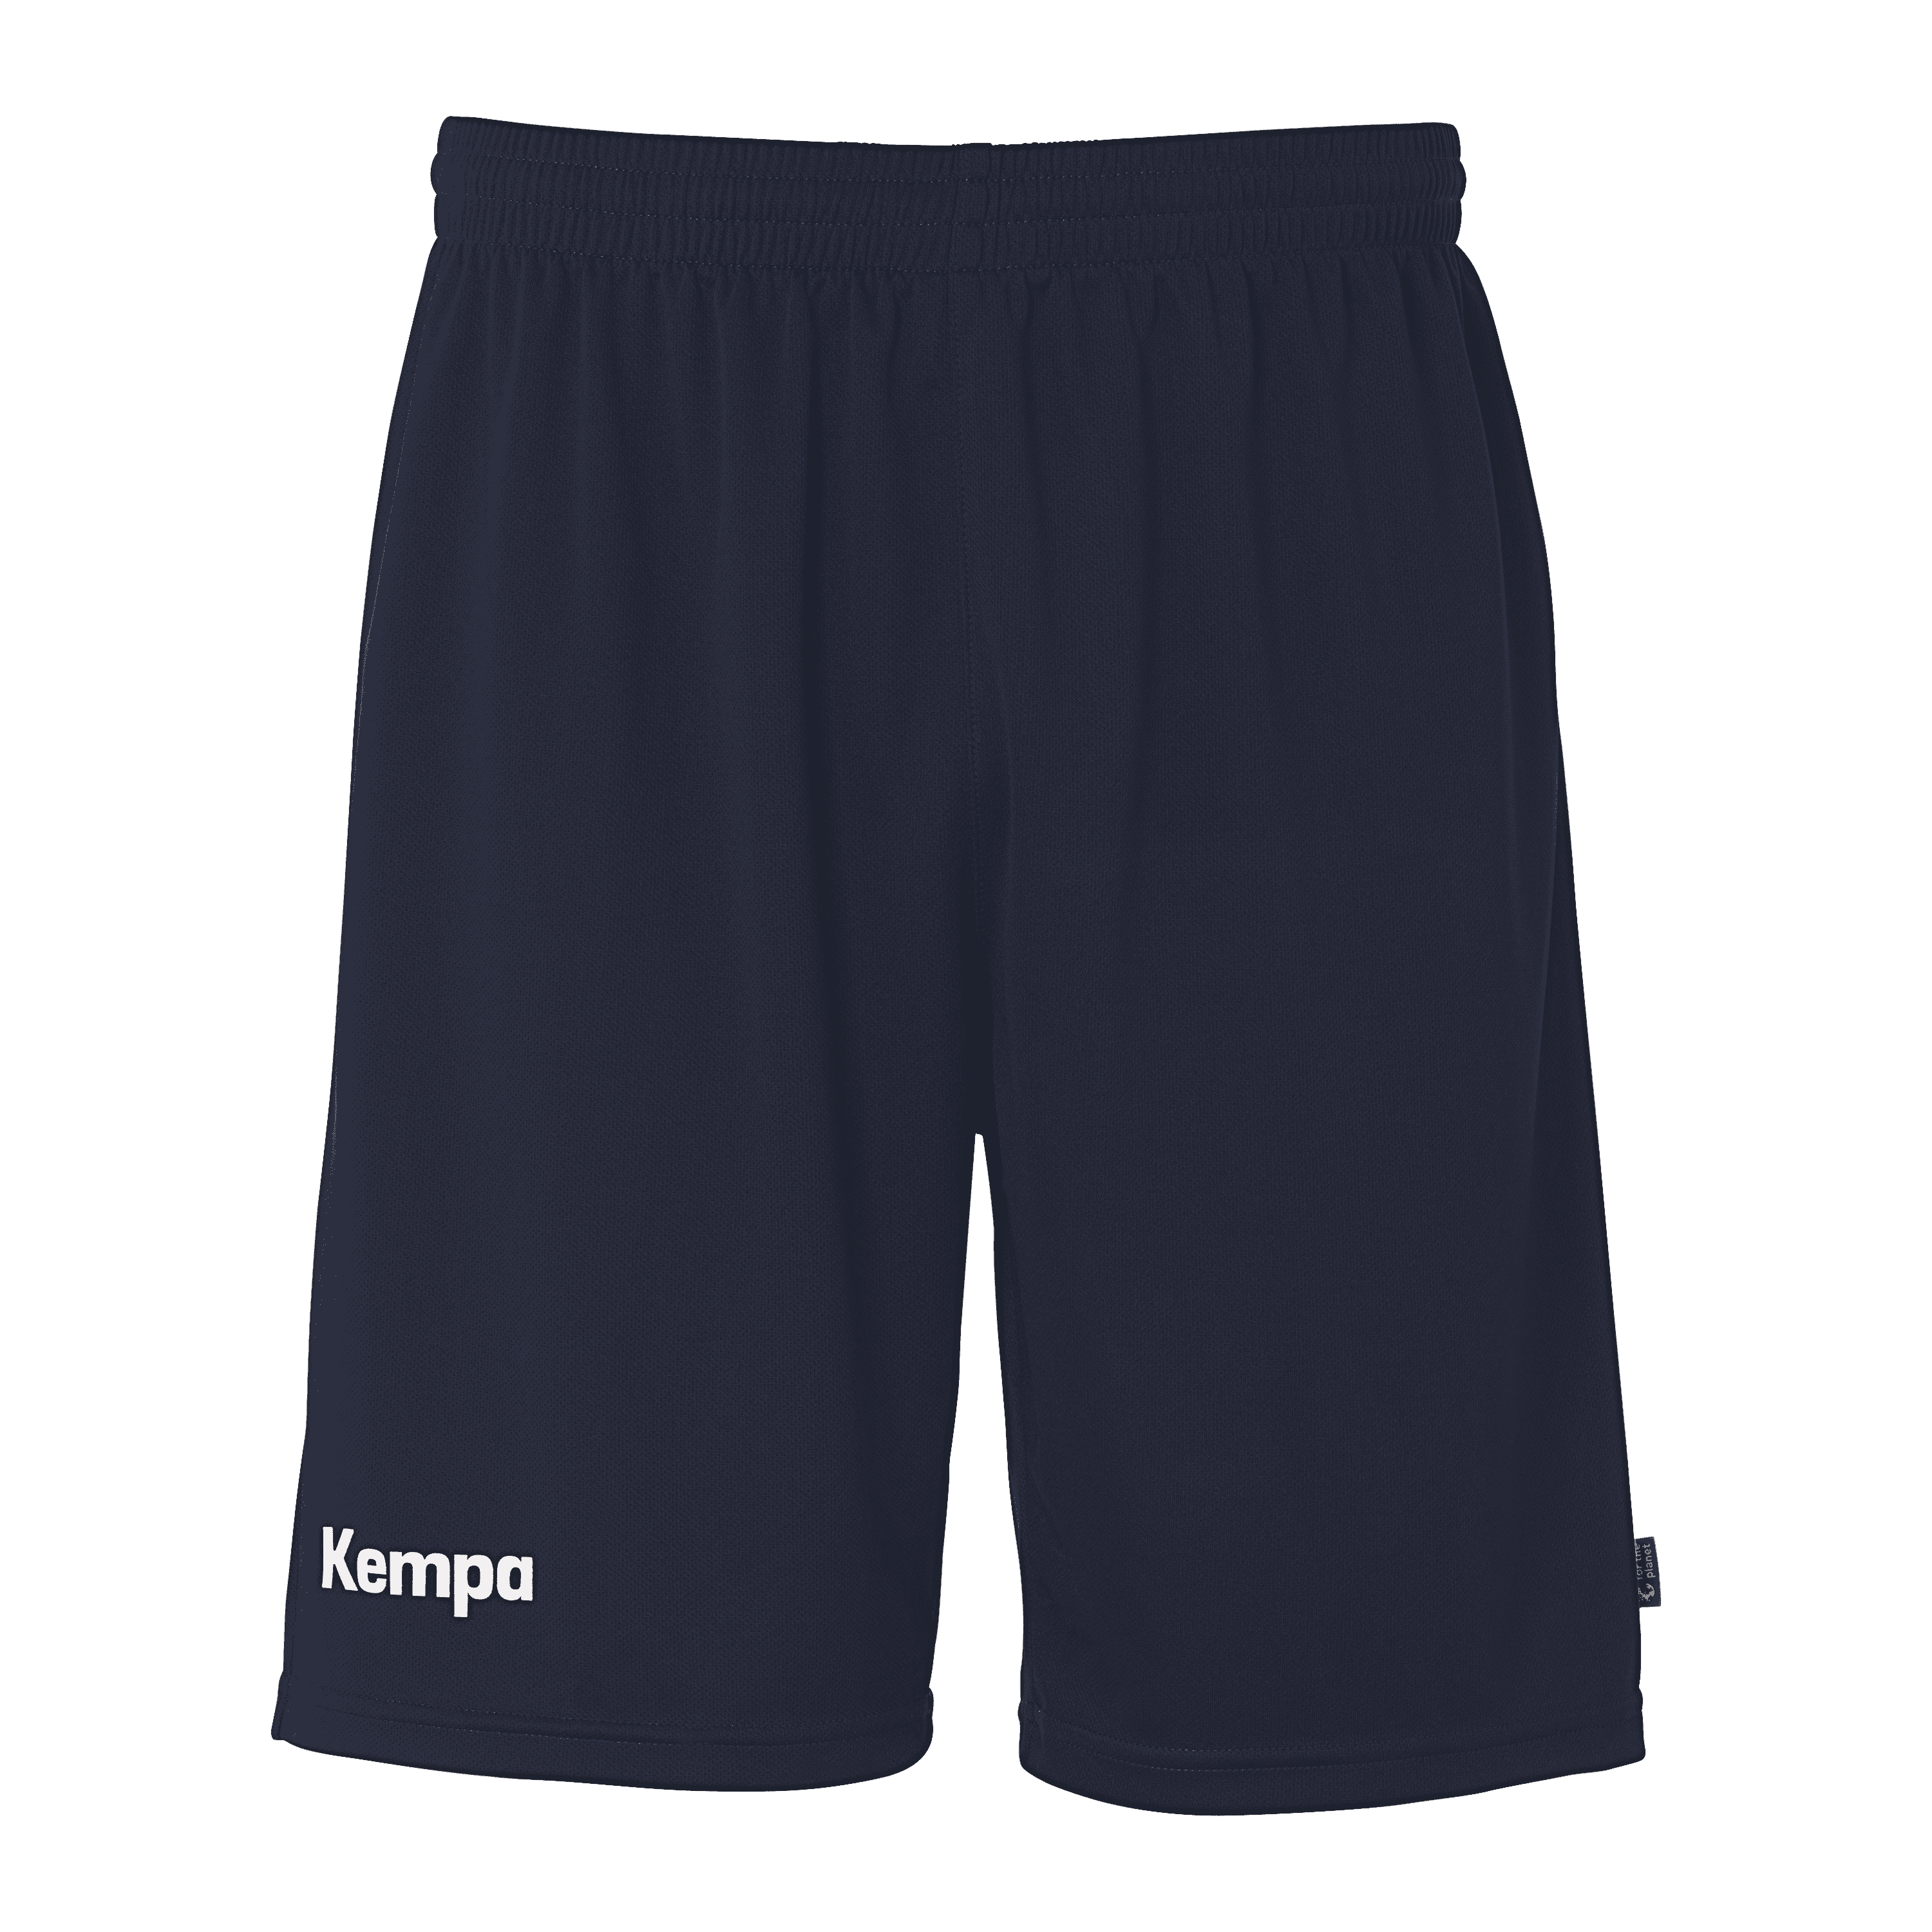 Kempa Team Shorts marine